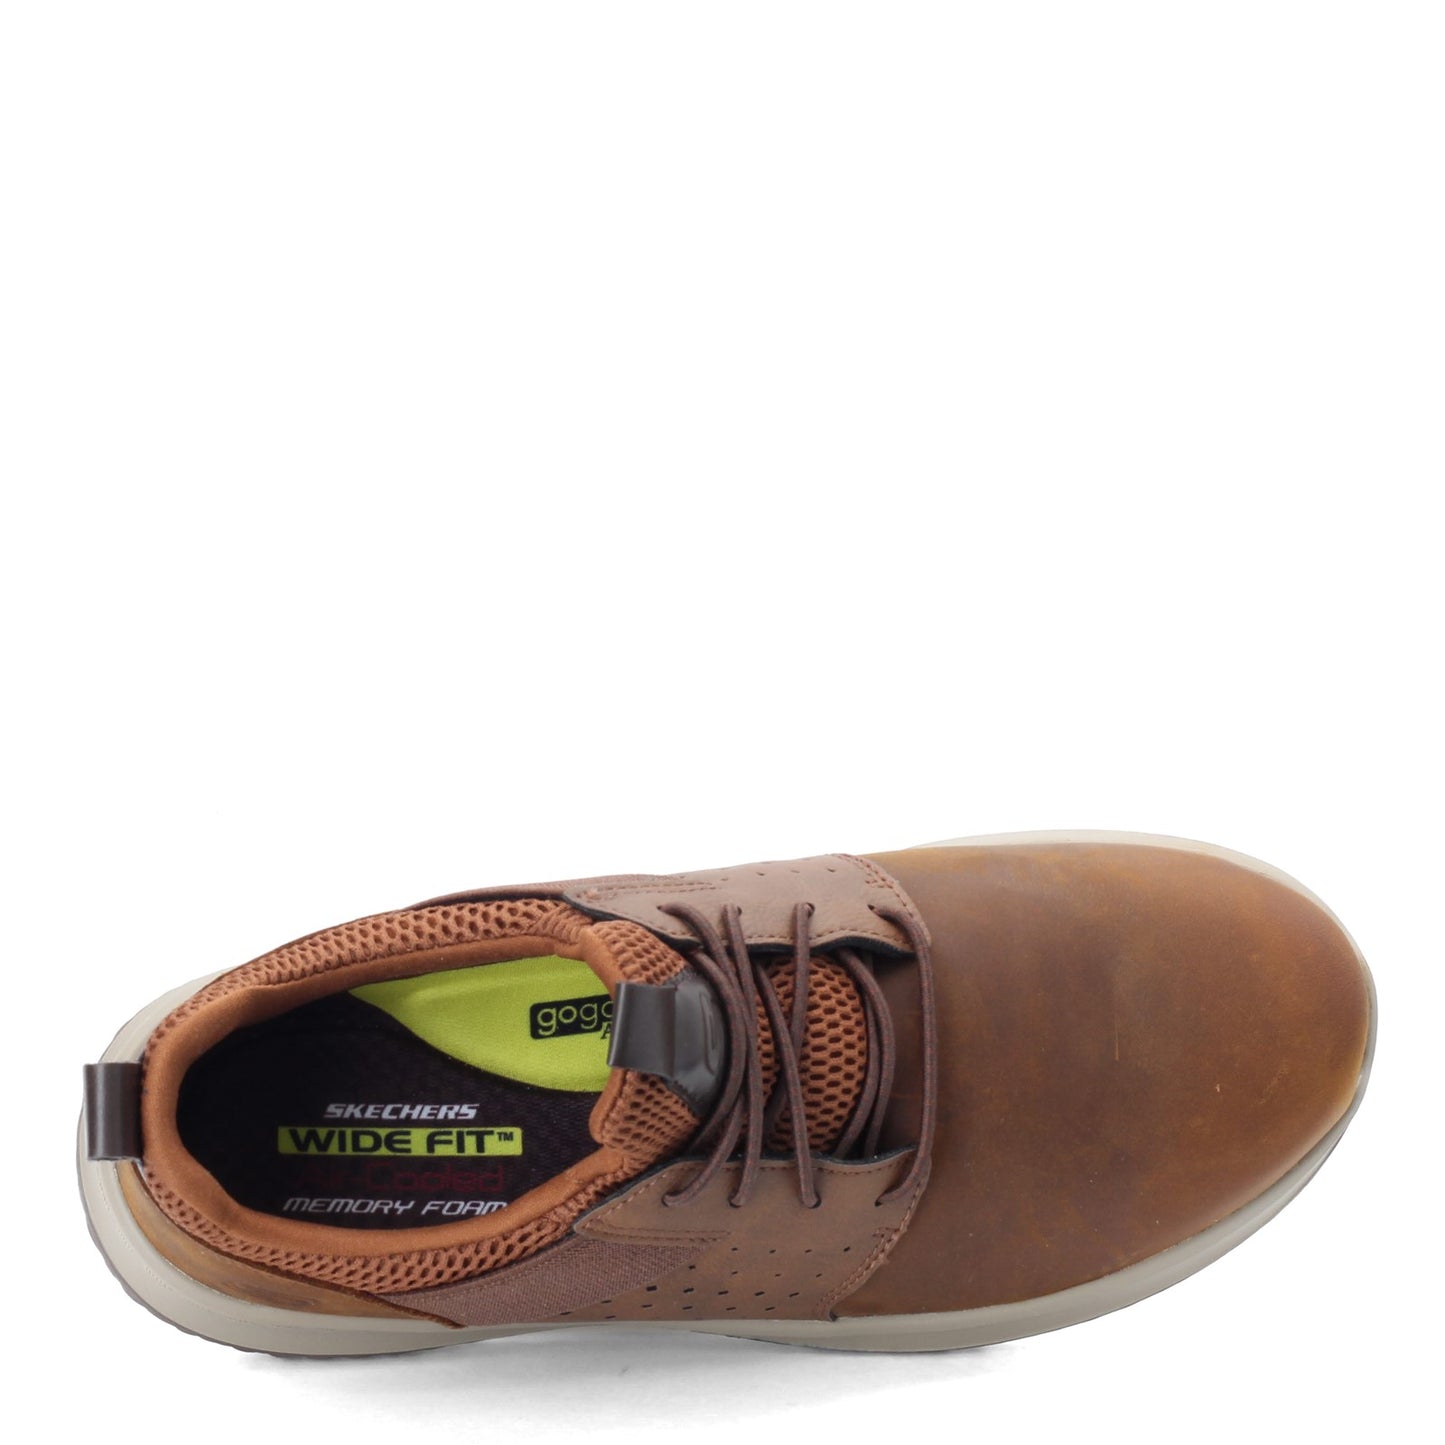 Peltz Shoes  Men's Skechers Delson - Axton Sneaker - Wide Width BROWN 65870W-CDB